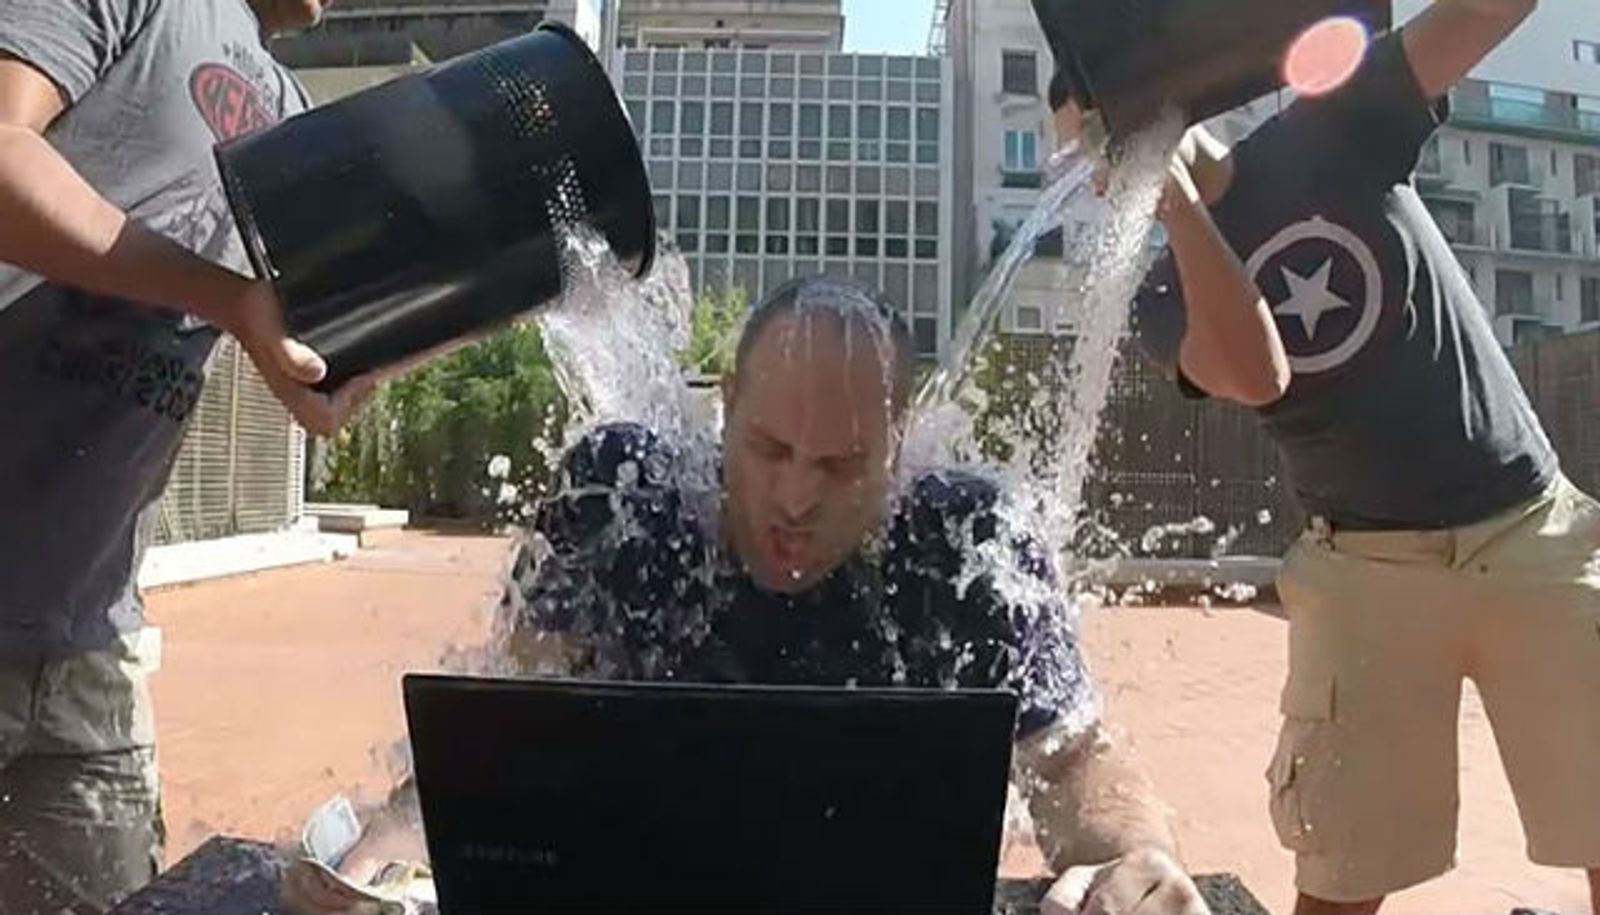 BaDoink Organizes Industry ALS Ice Bucket Challenges